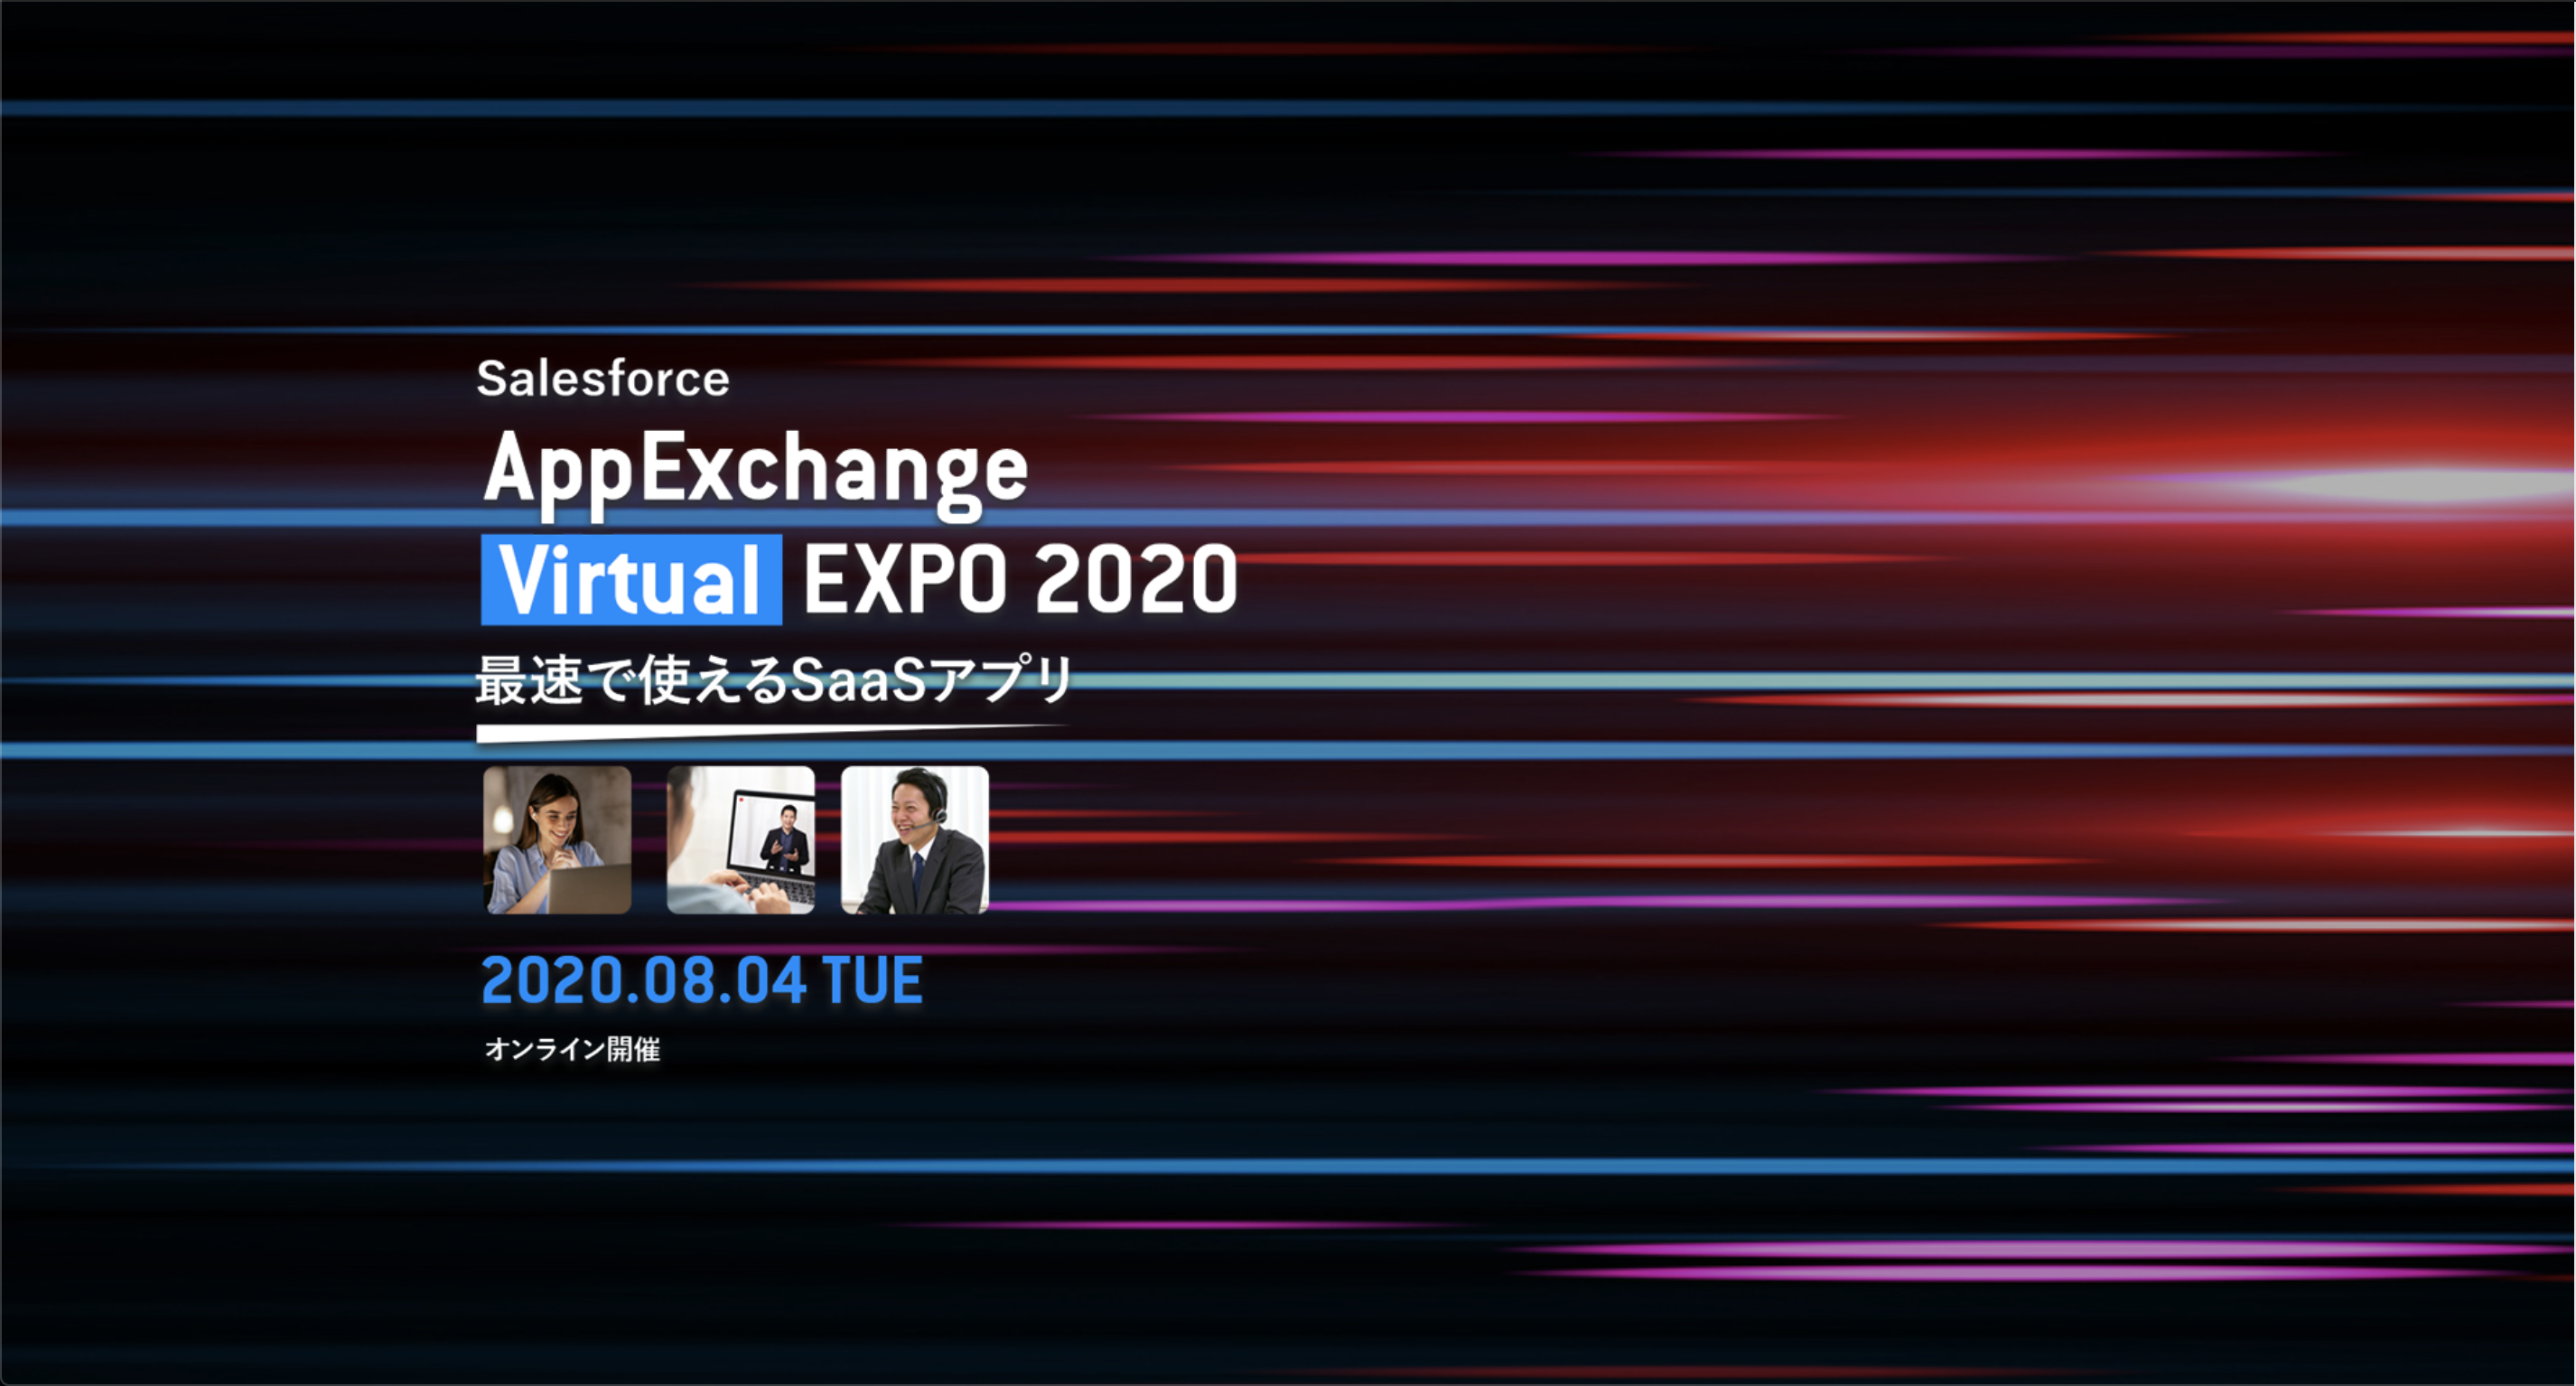 AppExchange VirtualEXPO 2020